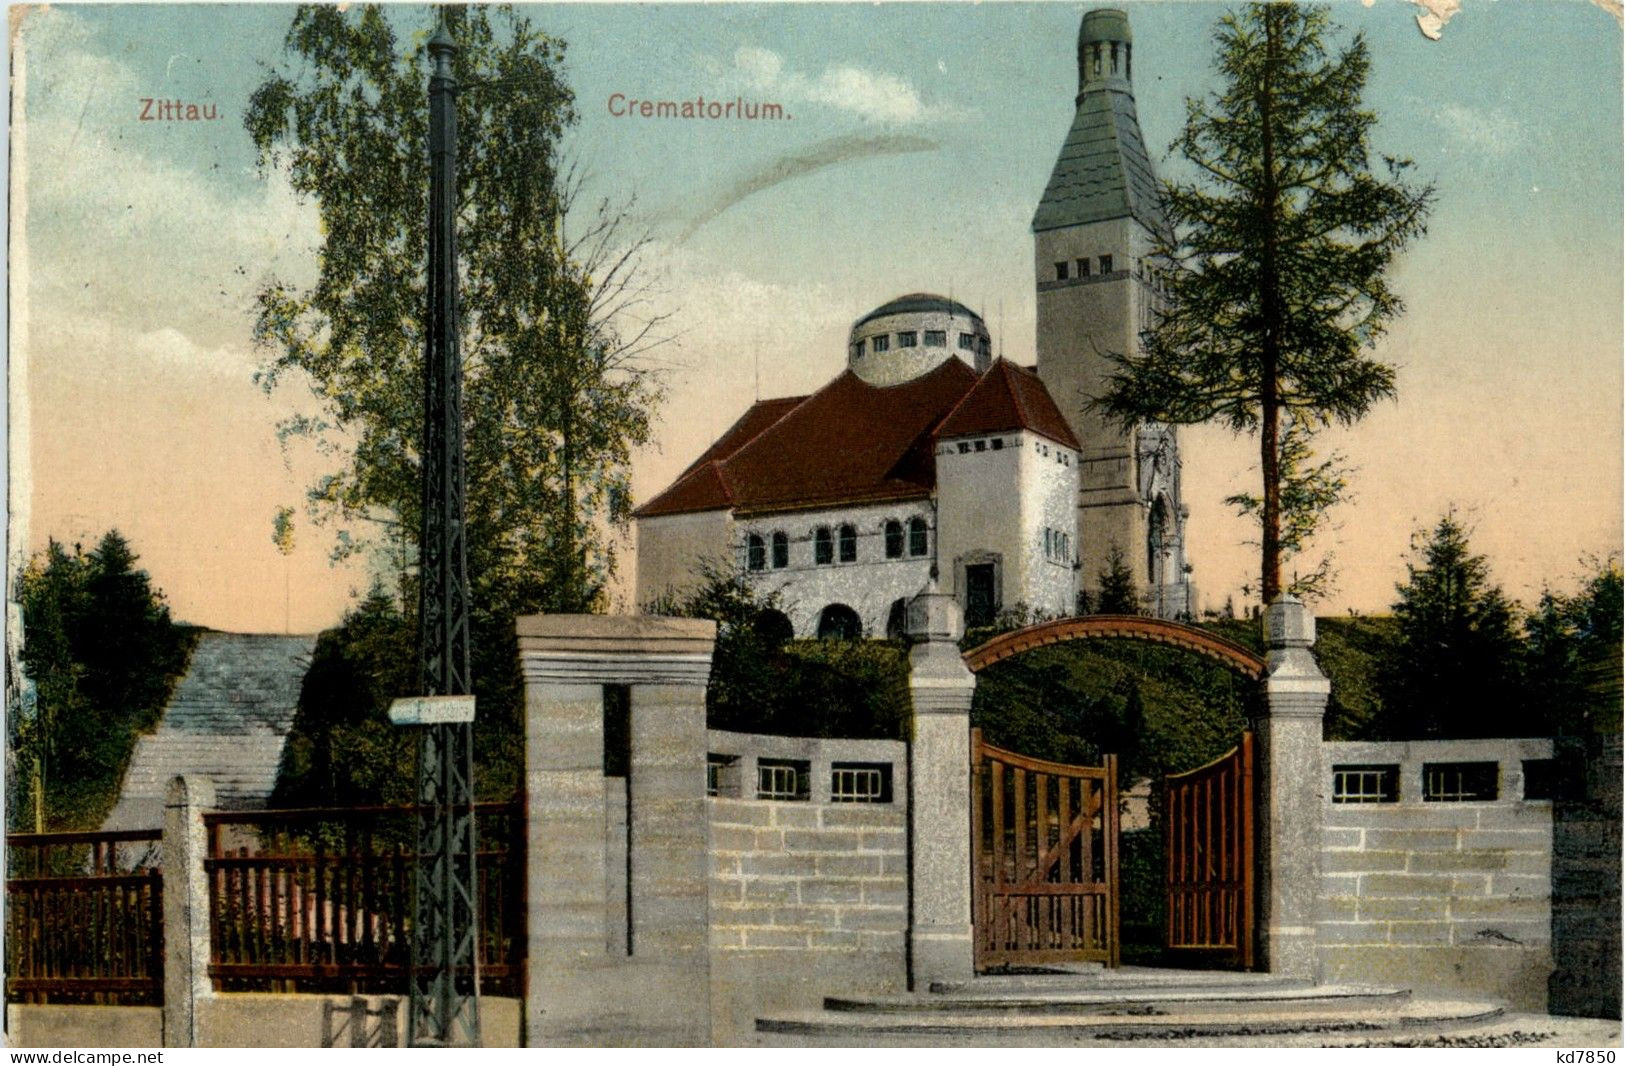 Zittau - Krematorium - Zittau